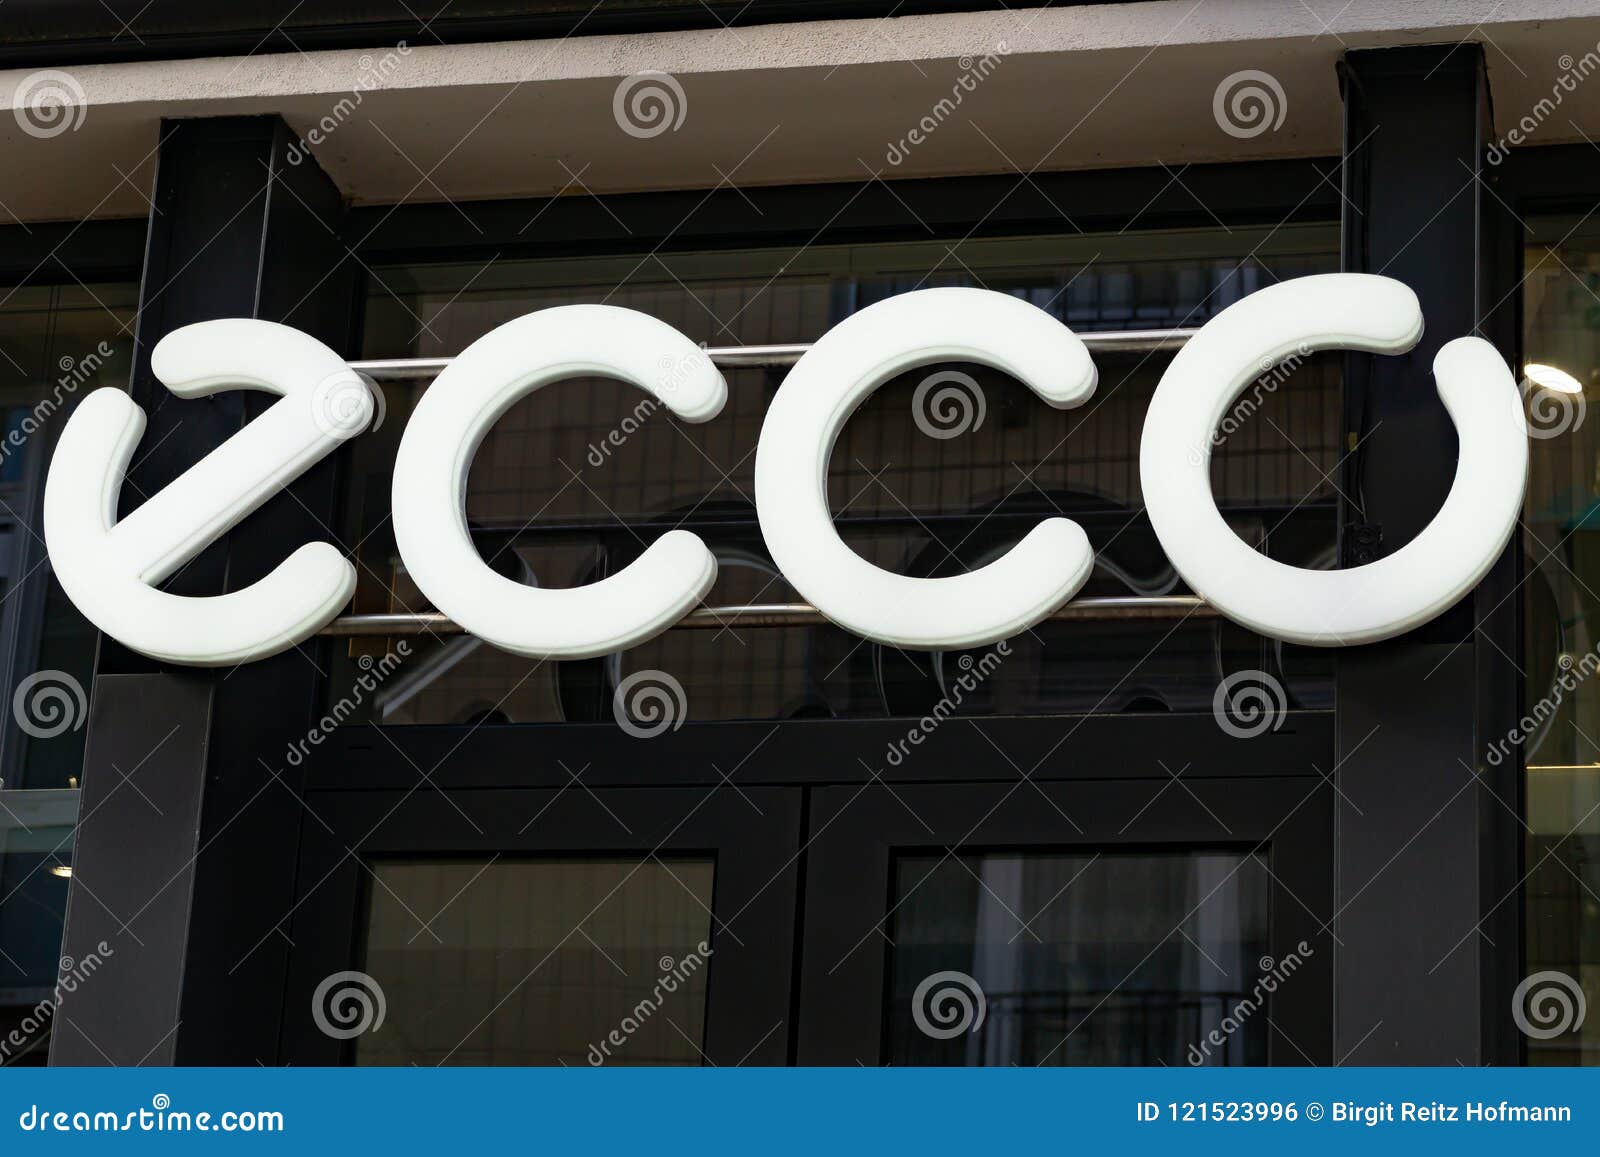 Ecco Logo Stock Photos - Free Stock Photos from Dreamstime